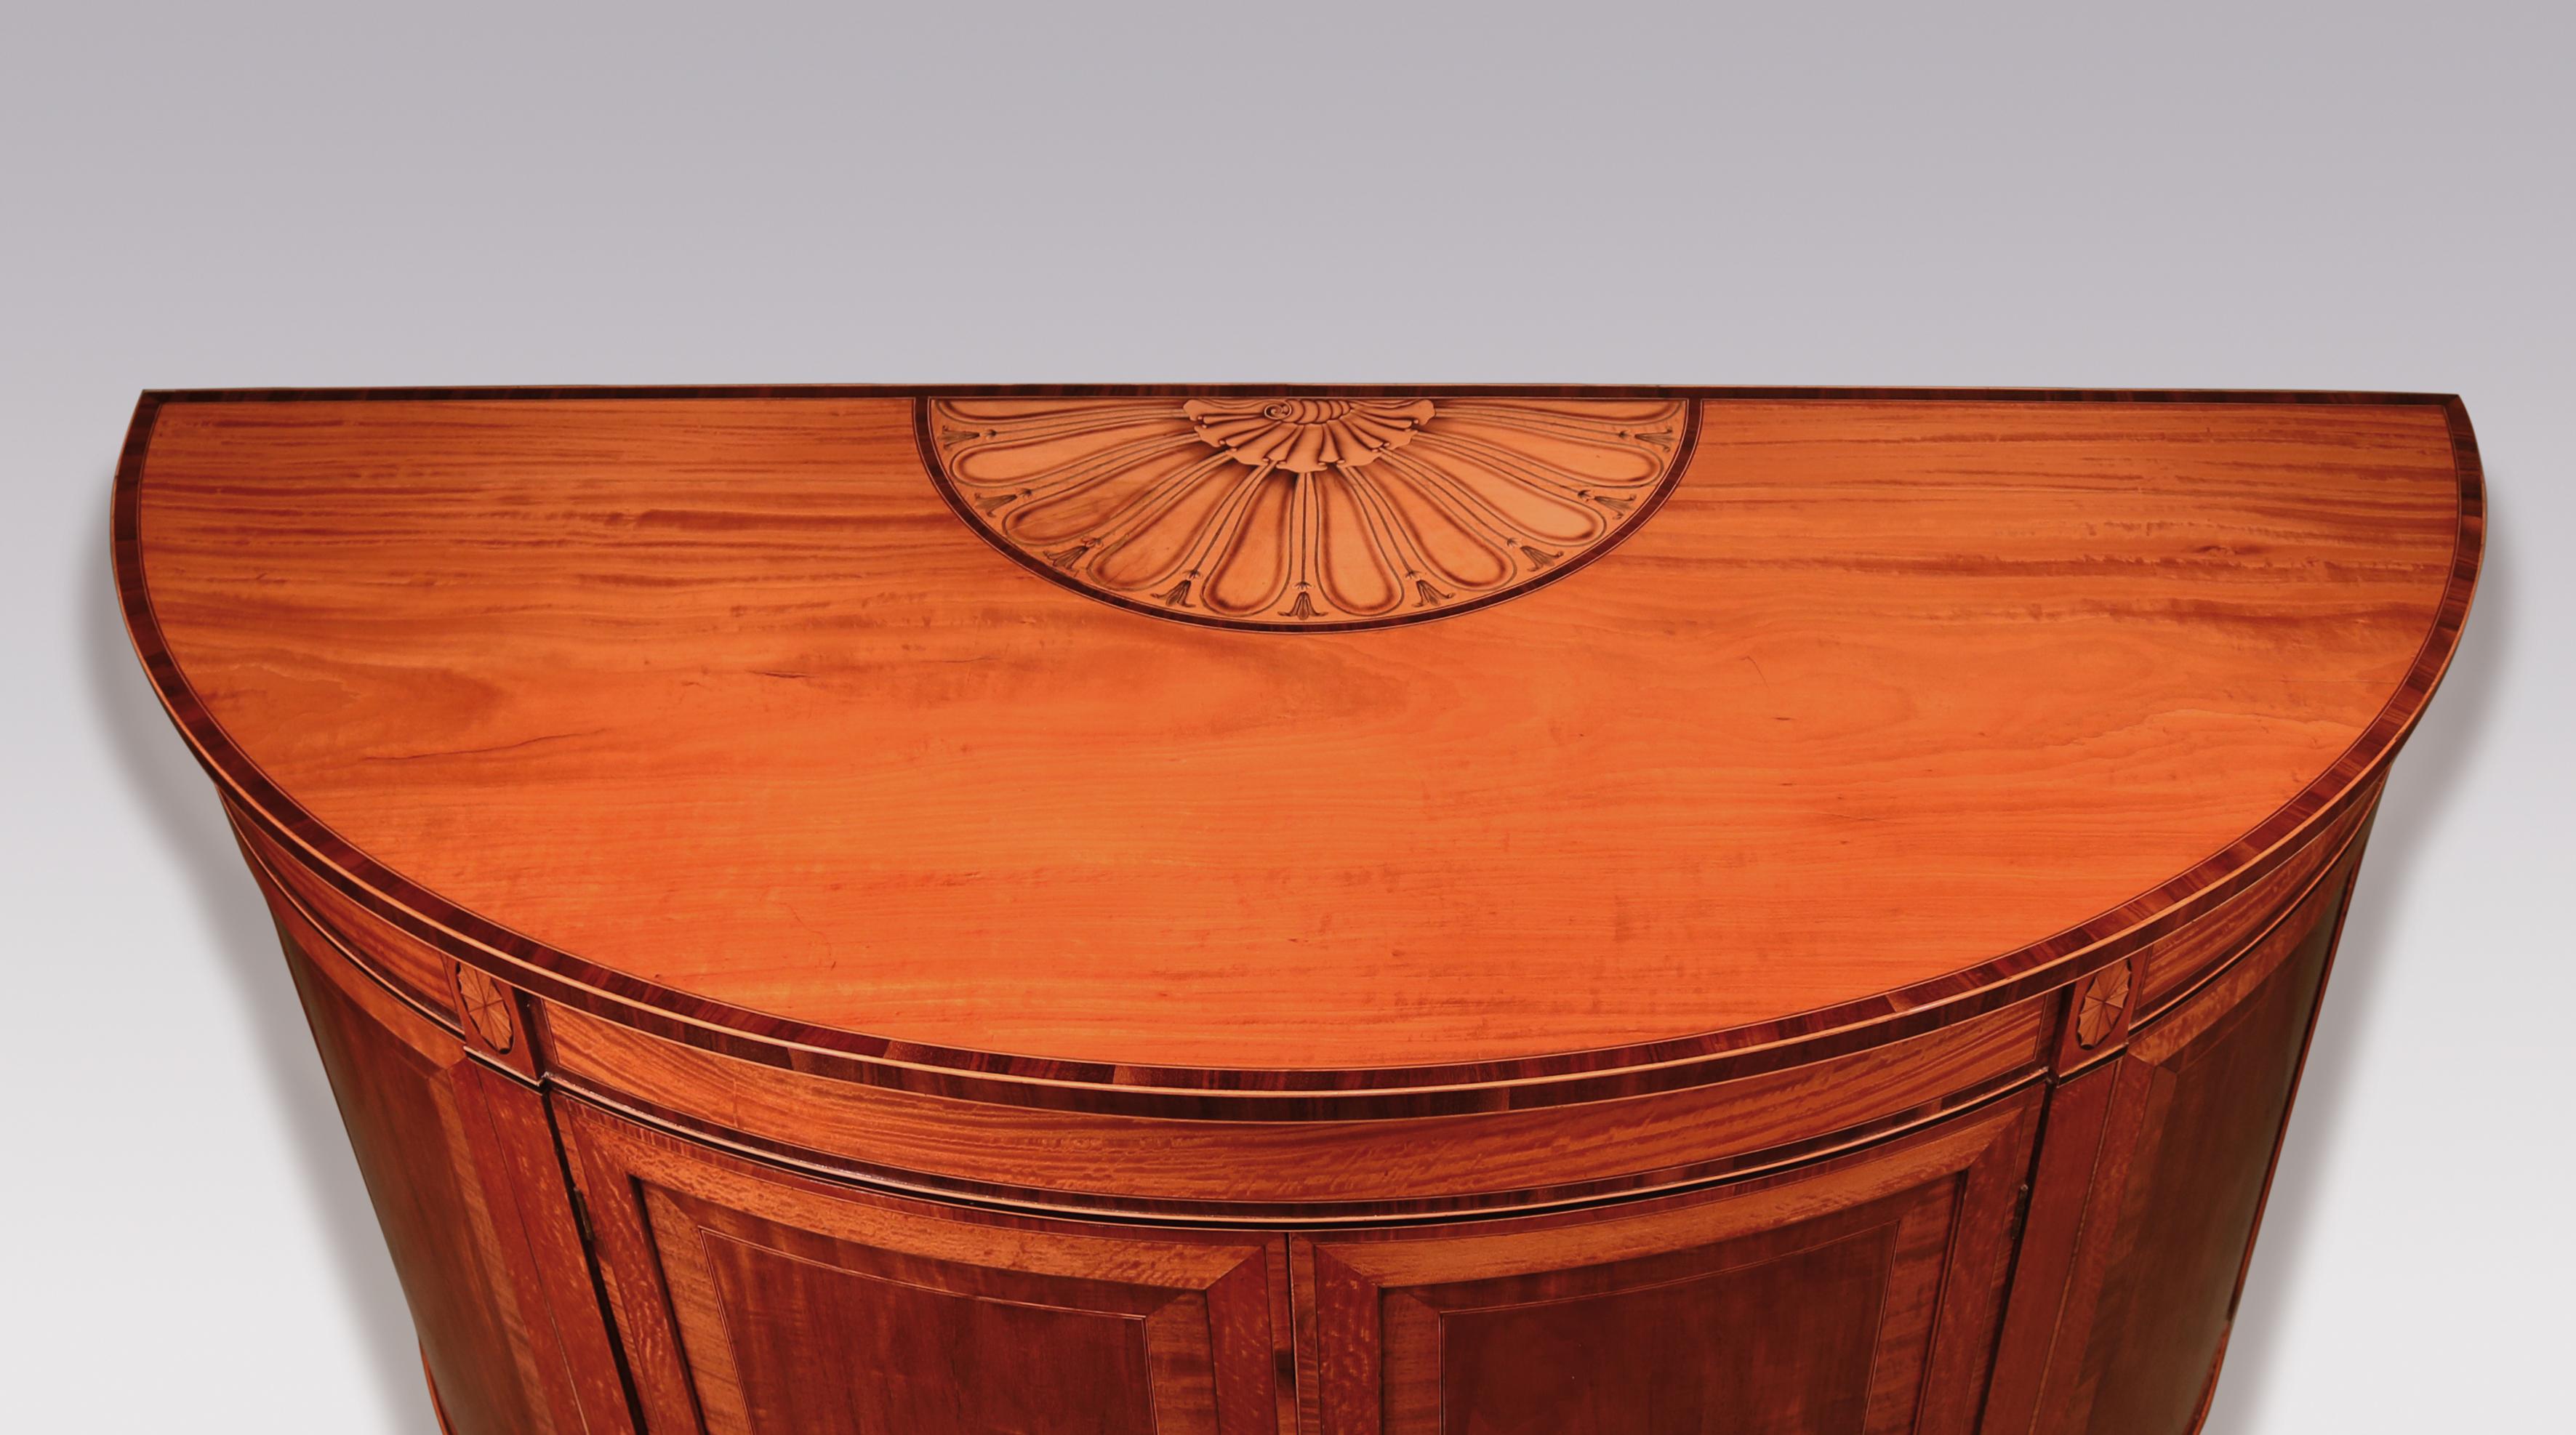 Commode démilune de belle qualité de la fin du XVIIIe siècle de la période Sheraton, en buis et ébène, avec un plateau en bois de Coromandel à bandes croisées avec un panneau central à volutes, coquillages et cosses, au-dessus d'une frise à bandes